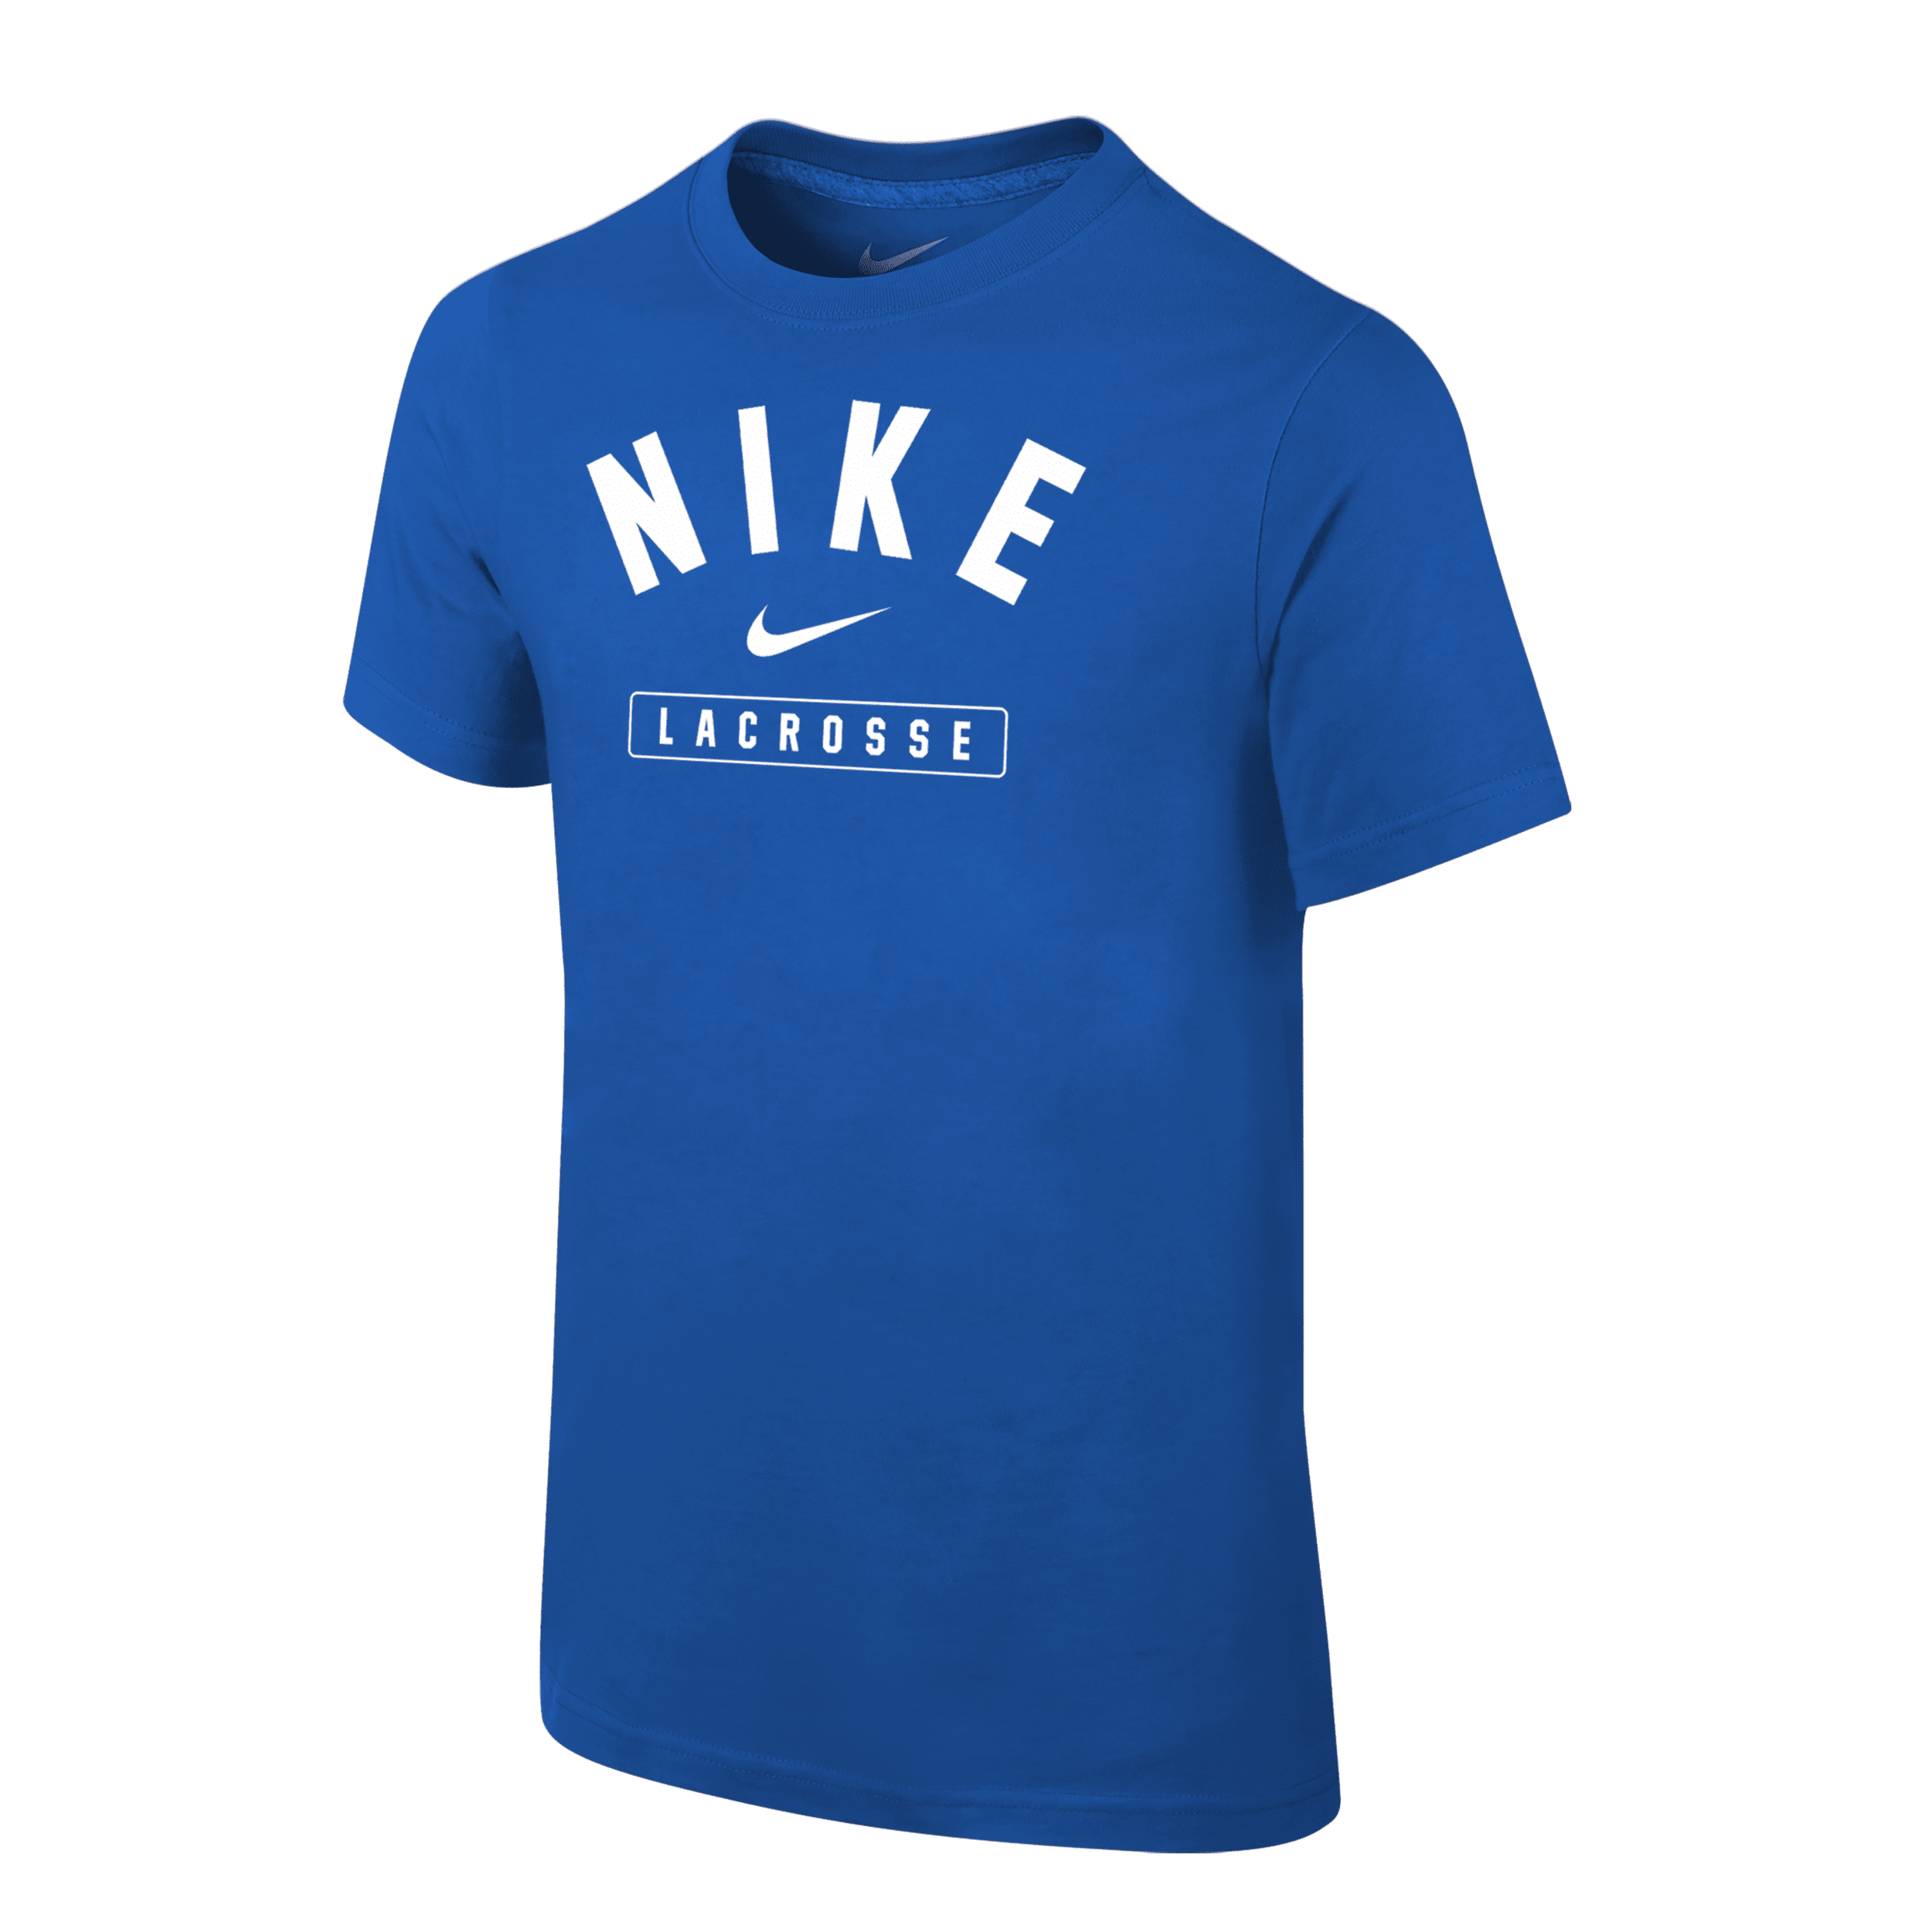 Nike Lacrosse Big Kids' (boys') T-shirt In Blue